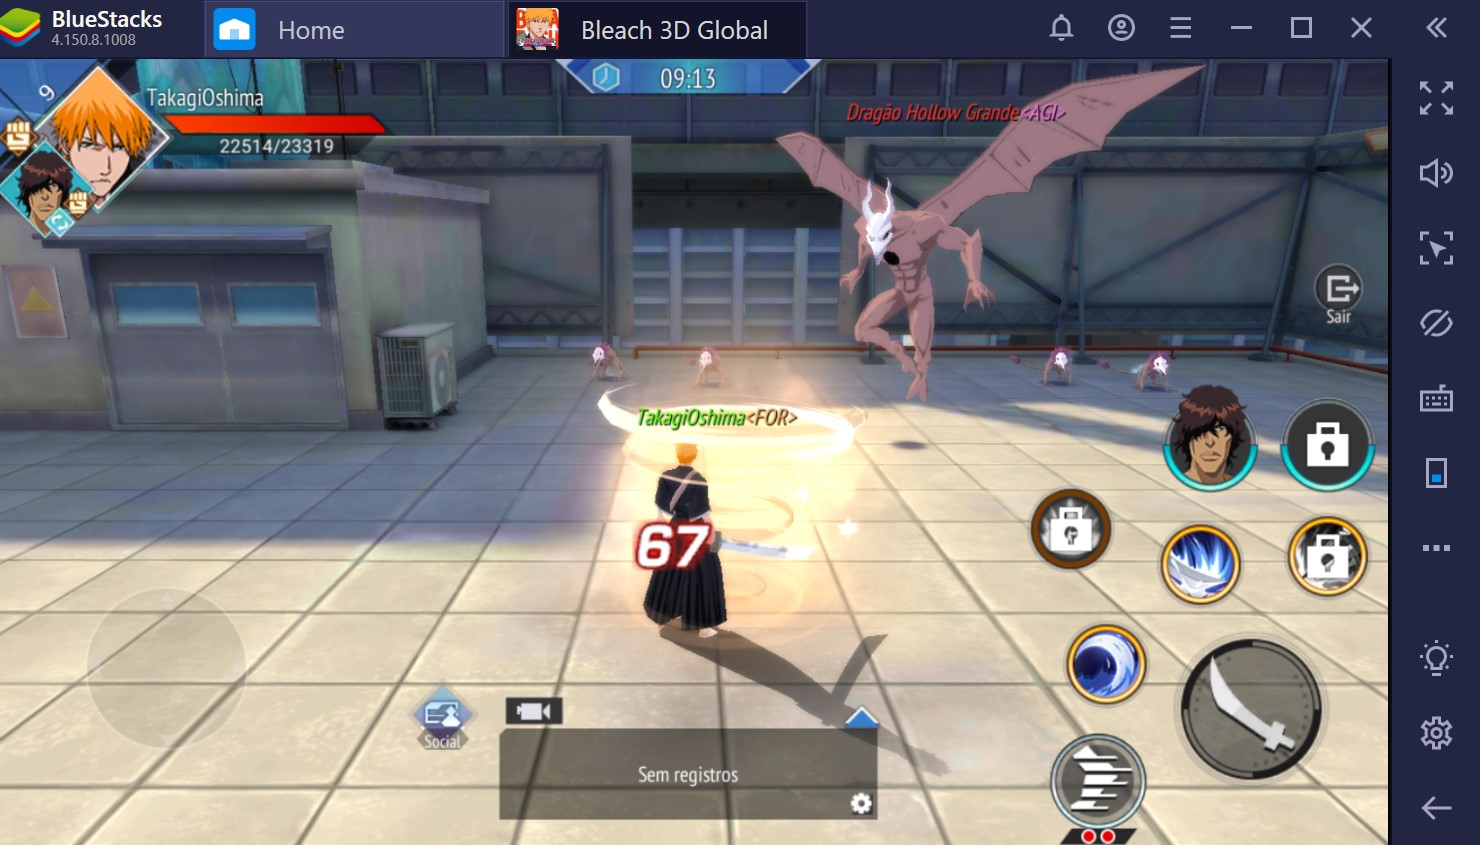 Como jogar Bleach Mobile 3D no PC com o BlueStacks